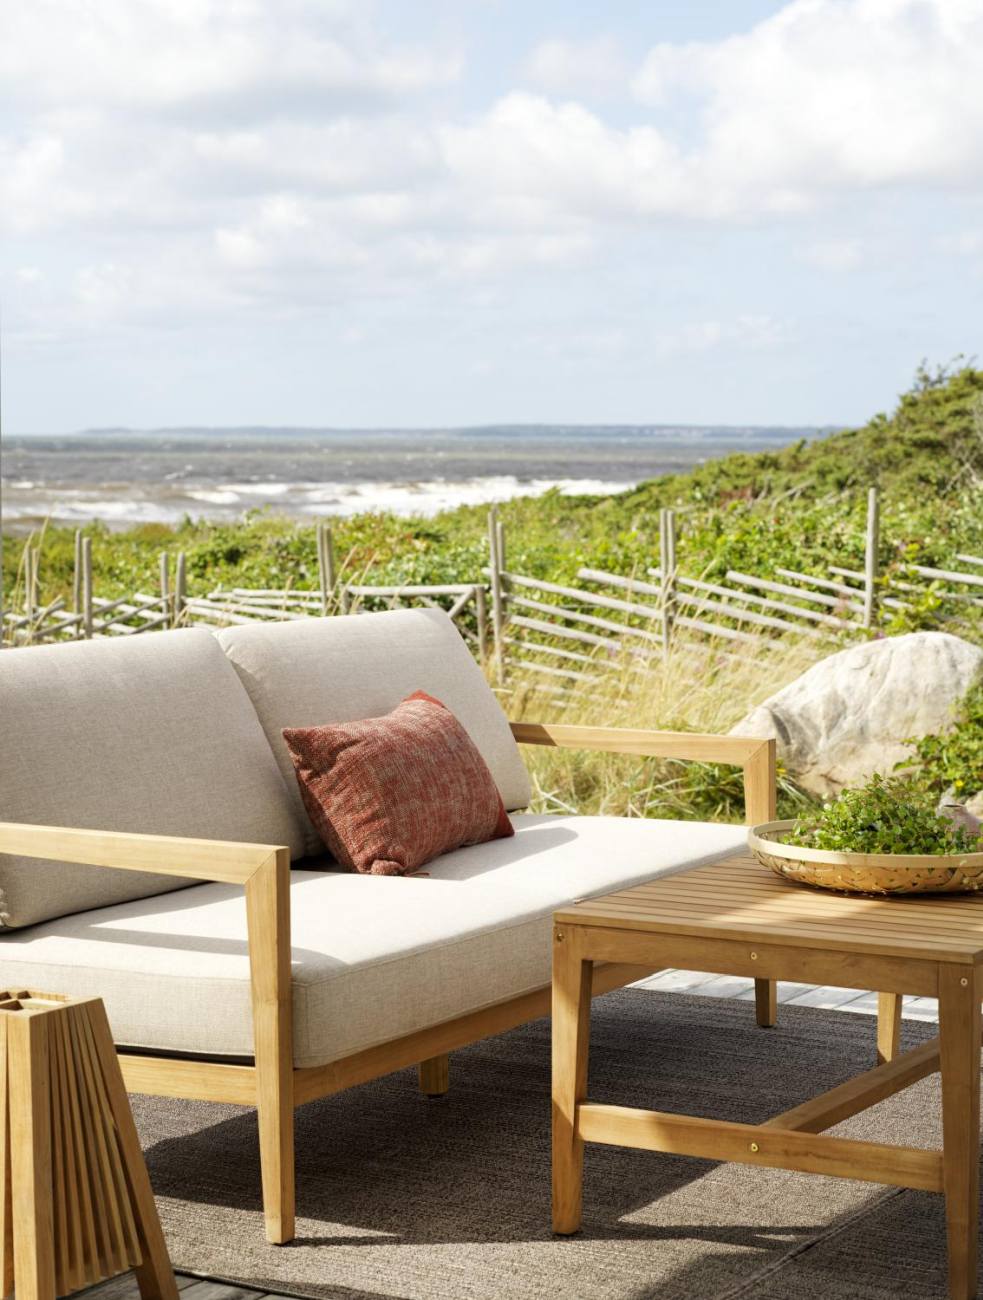 Das Gartensofa Populär überzeugt mit seinem modernen Design. Gefertigt wurde er aus Stoff, welcher einen grauen Farbton besitzt. Das Gestell ist aus Teakholz und hat eine braune Farbe. Die Sitzhöhe des Sofas beträgt 44 cm.